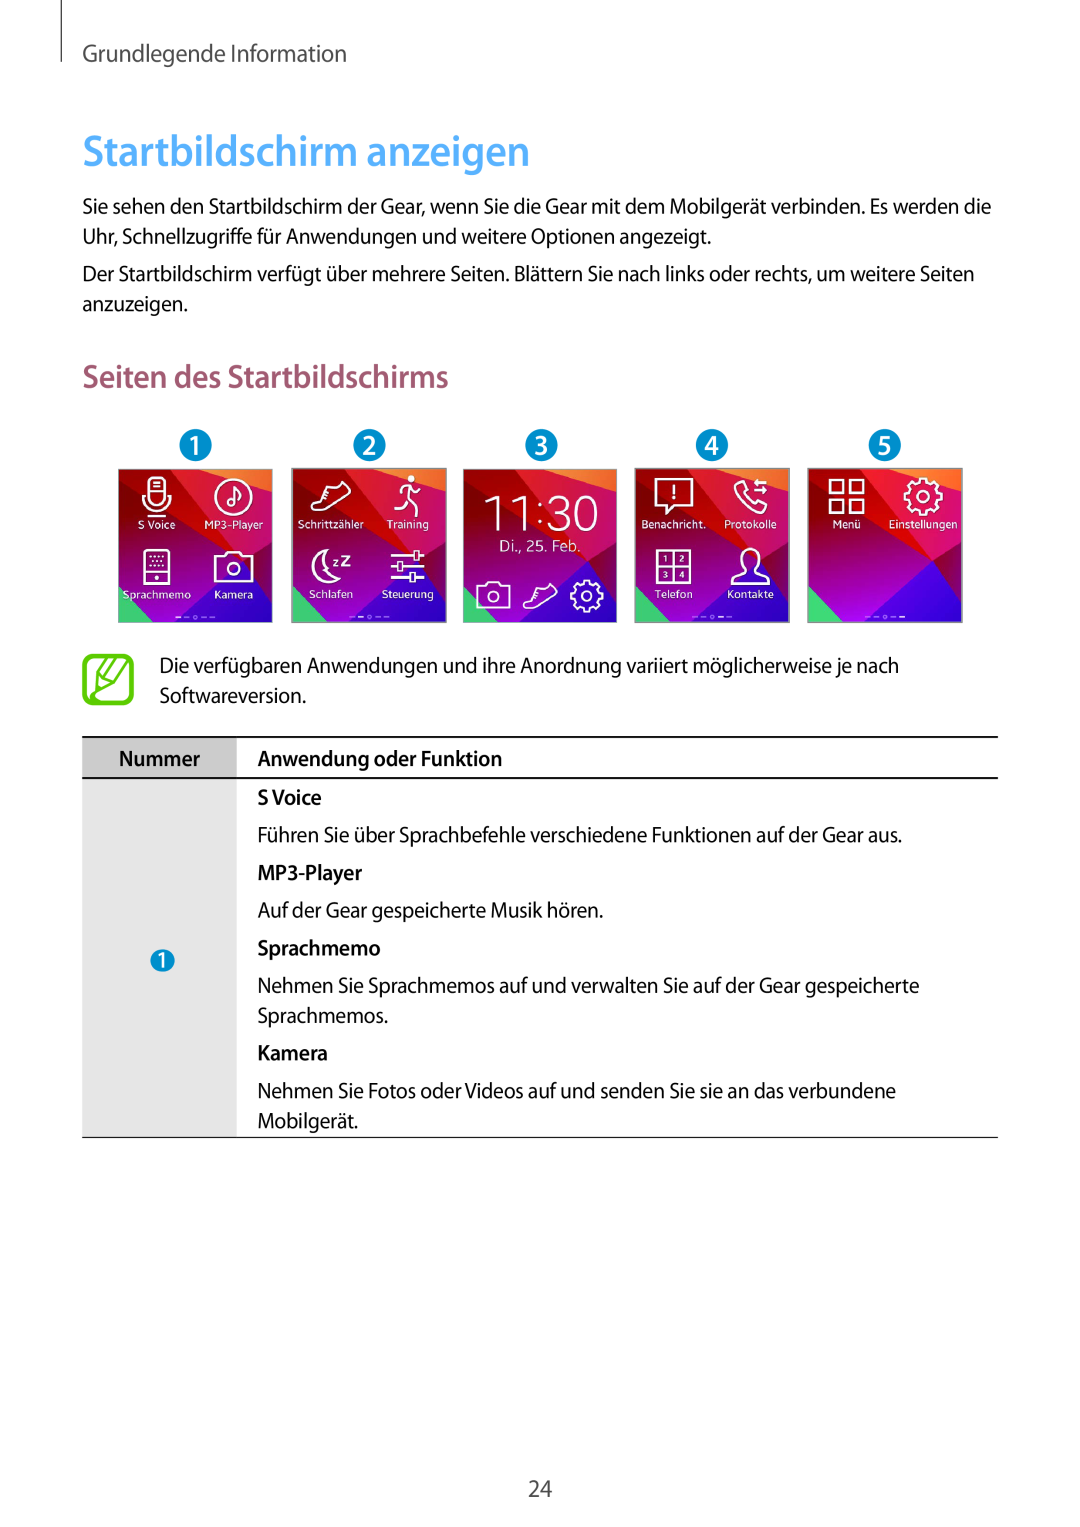 Samsung SM-V7000ZKAXEF, SM-V7000ZOATUR Startbildschirm anzeigen, Seiten des Startbildschirms, Grundlegende Information 